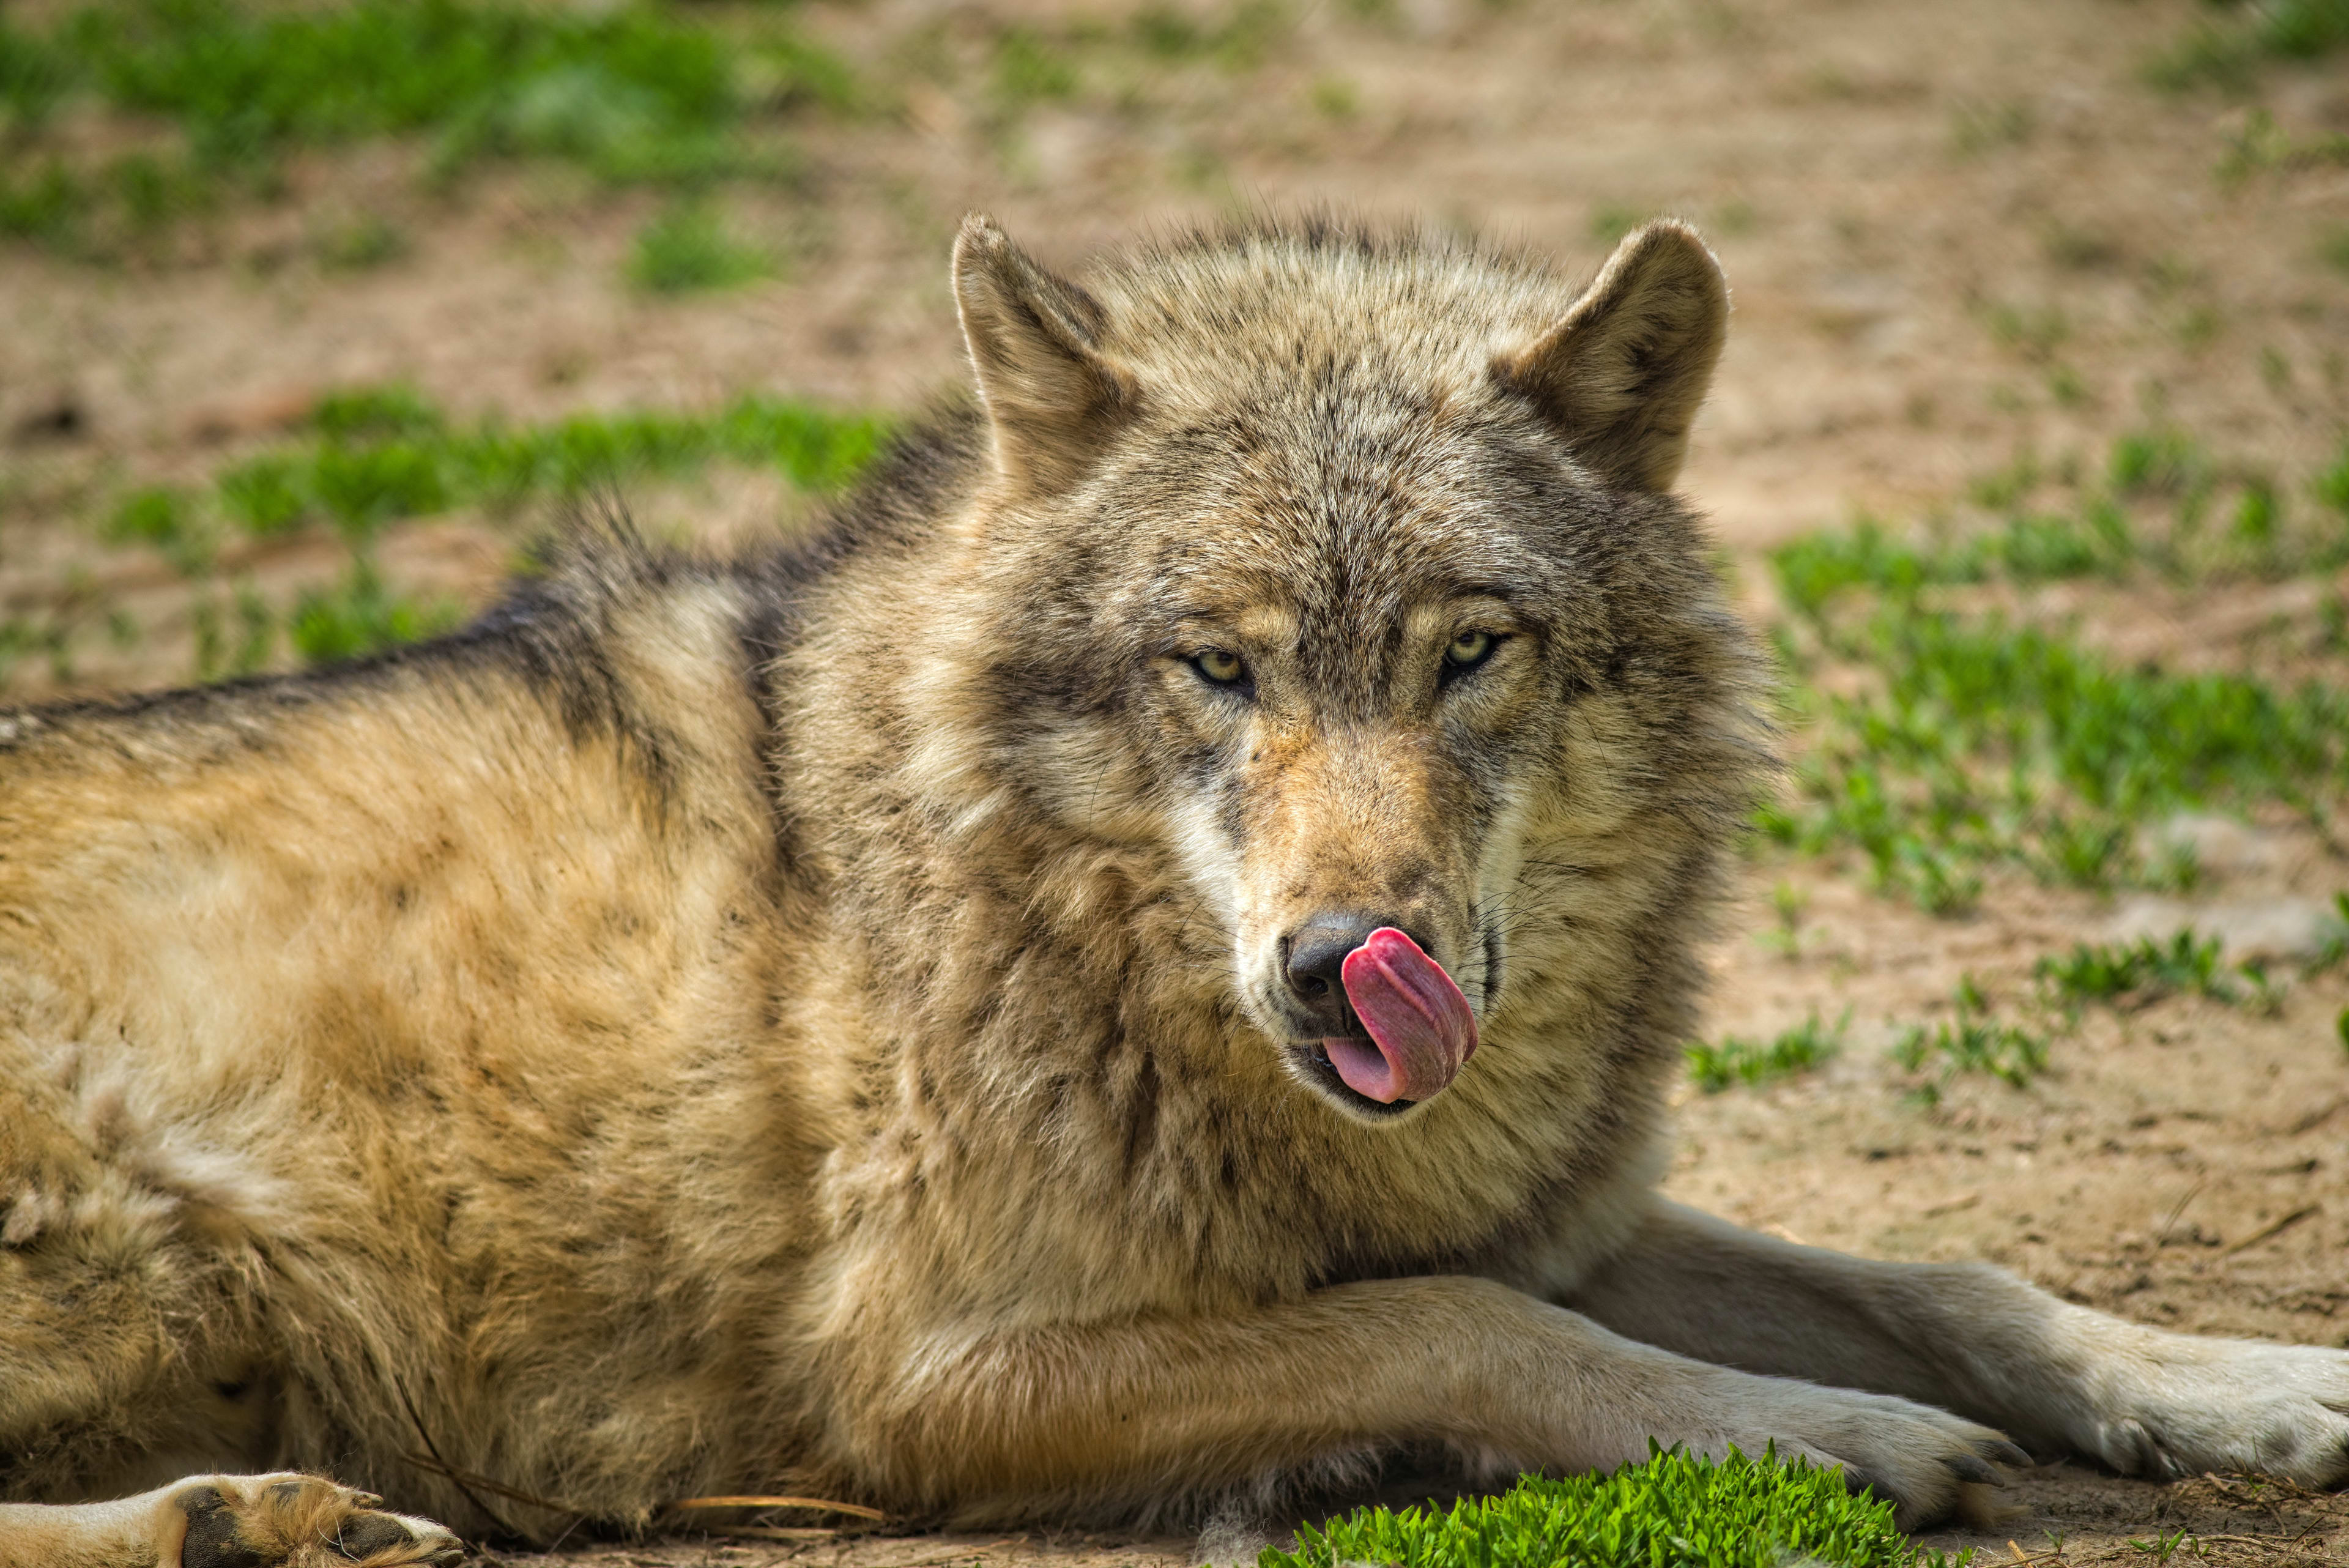 Vestiging van een wolf in Noord-Brabant nu vastgesteld